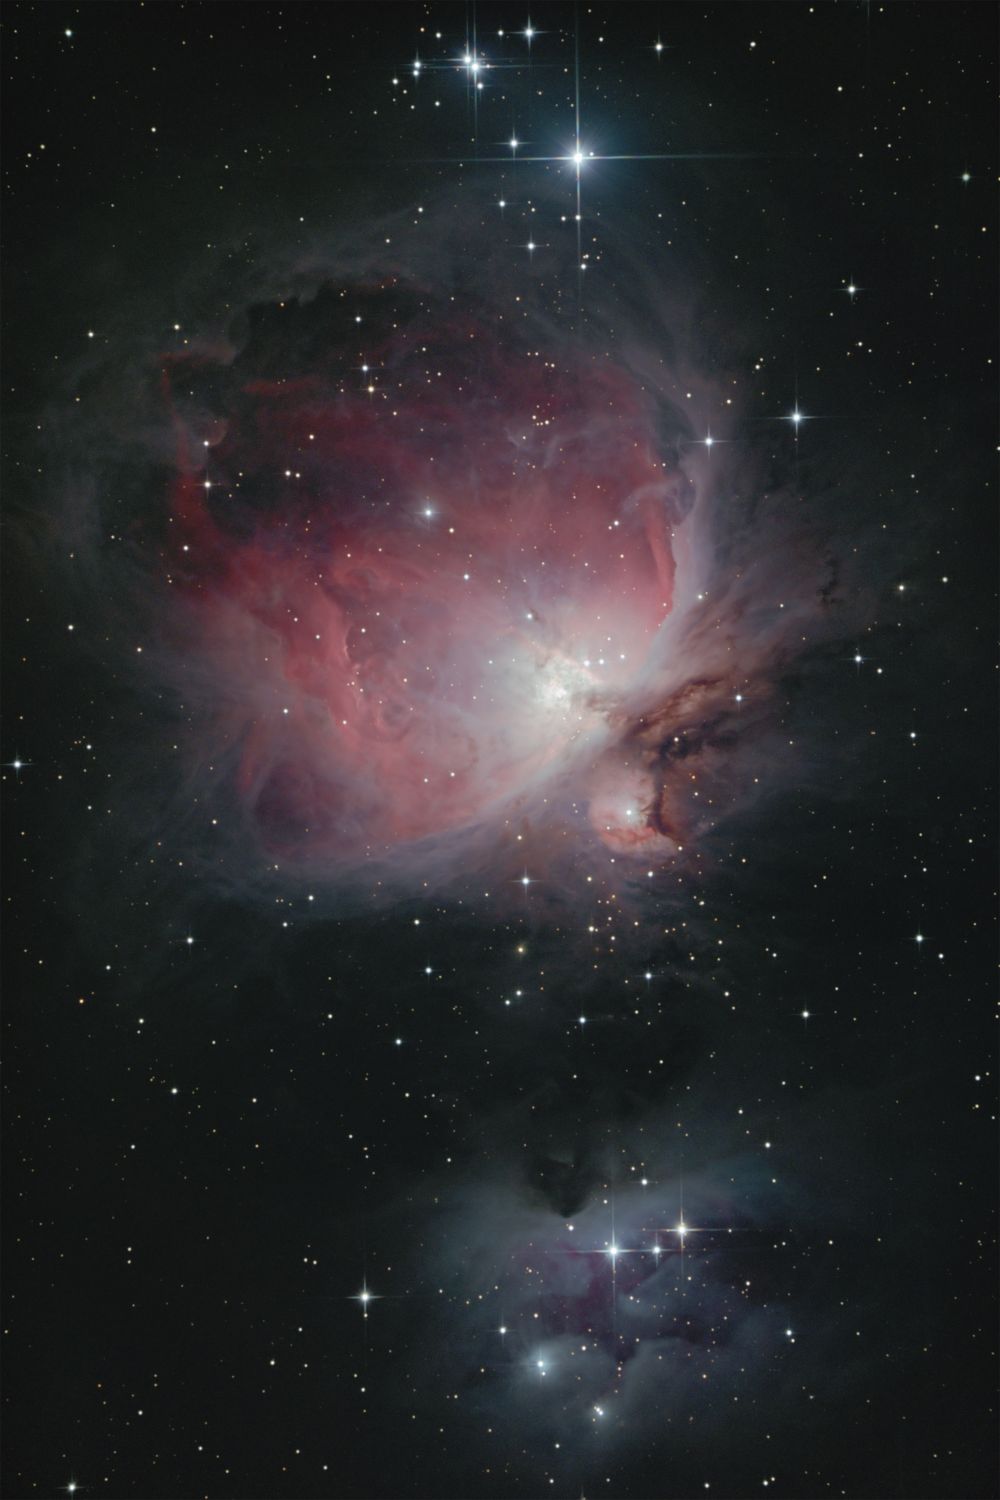 M42 Туманность Ориона и NGC1977  "Бегущий человек"